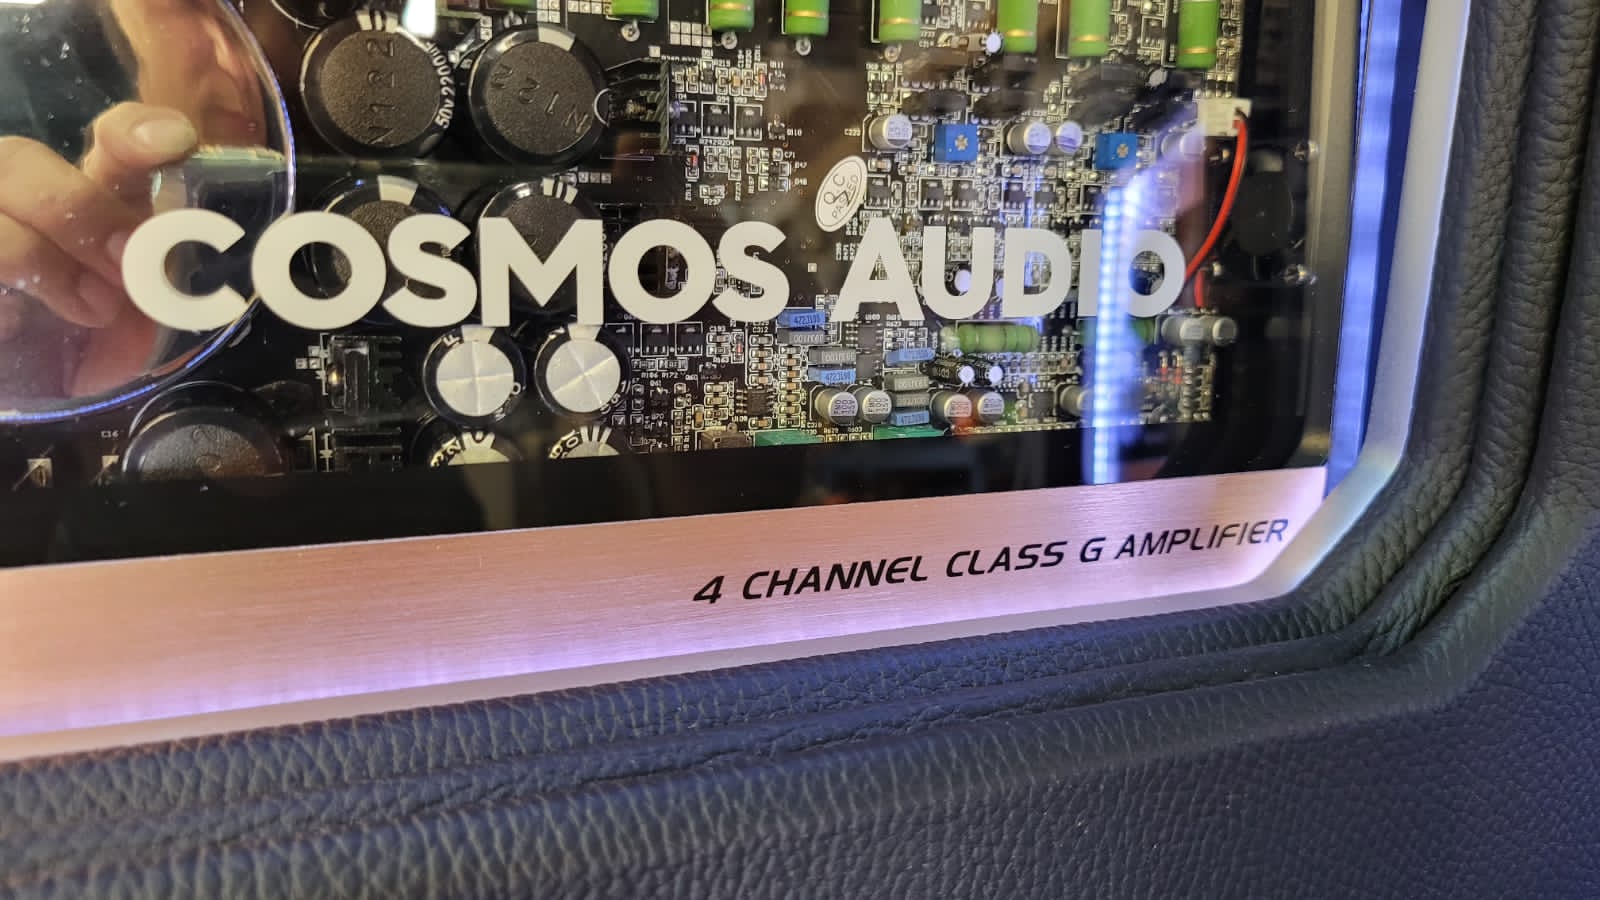 Cosmos Audio amplifier